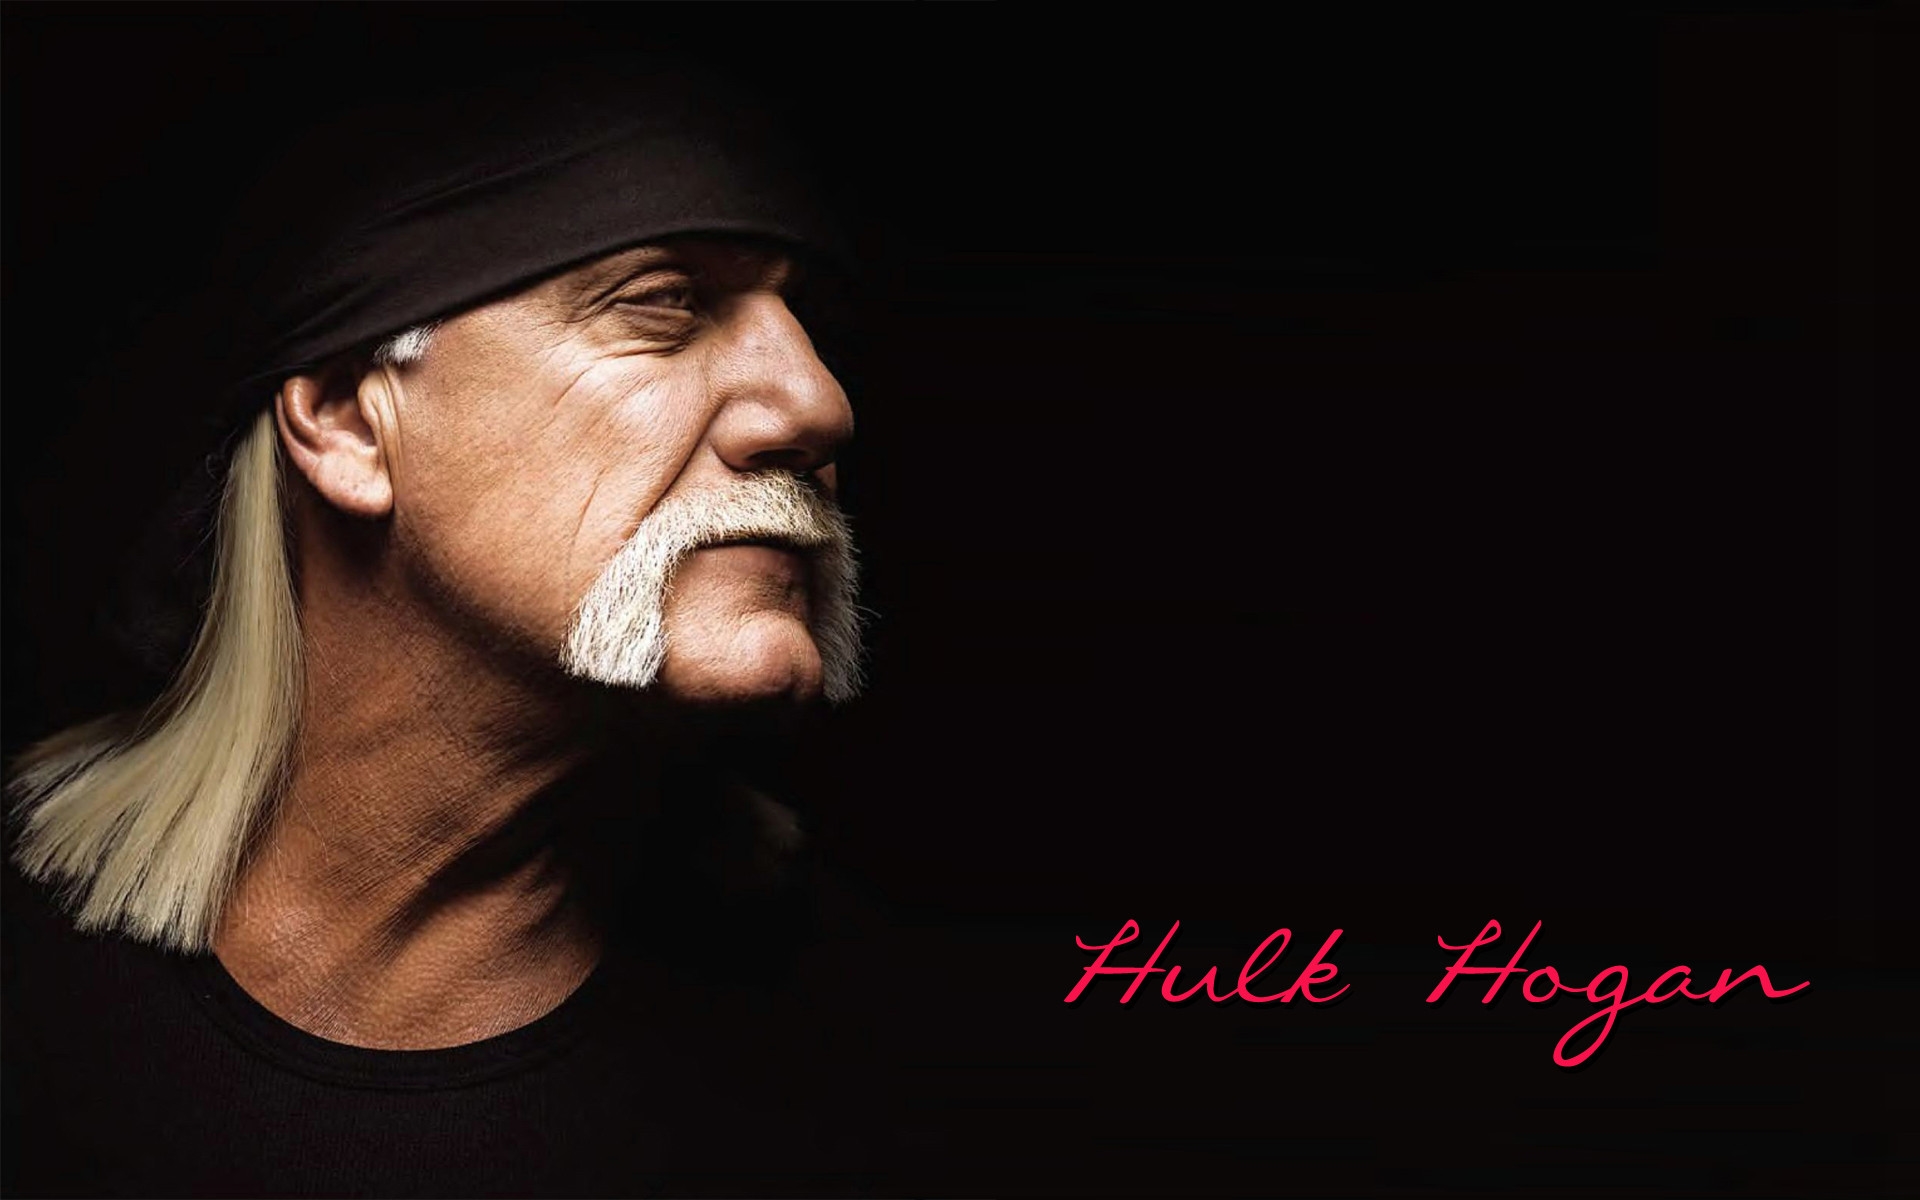 Hulk Hogan Hd Wallpaper - Hulk Hogan - HD Wallpaper 